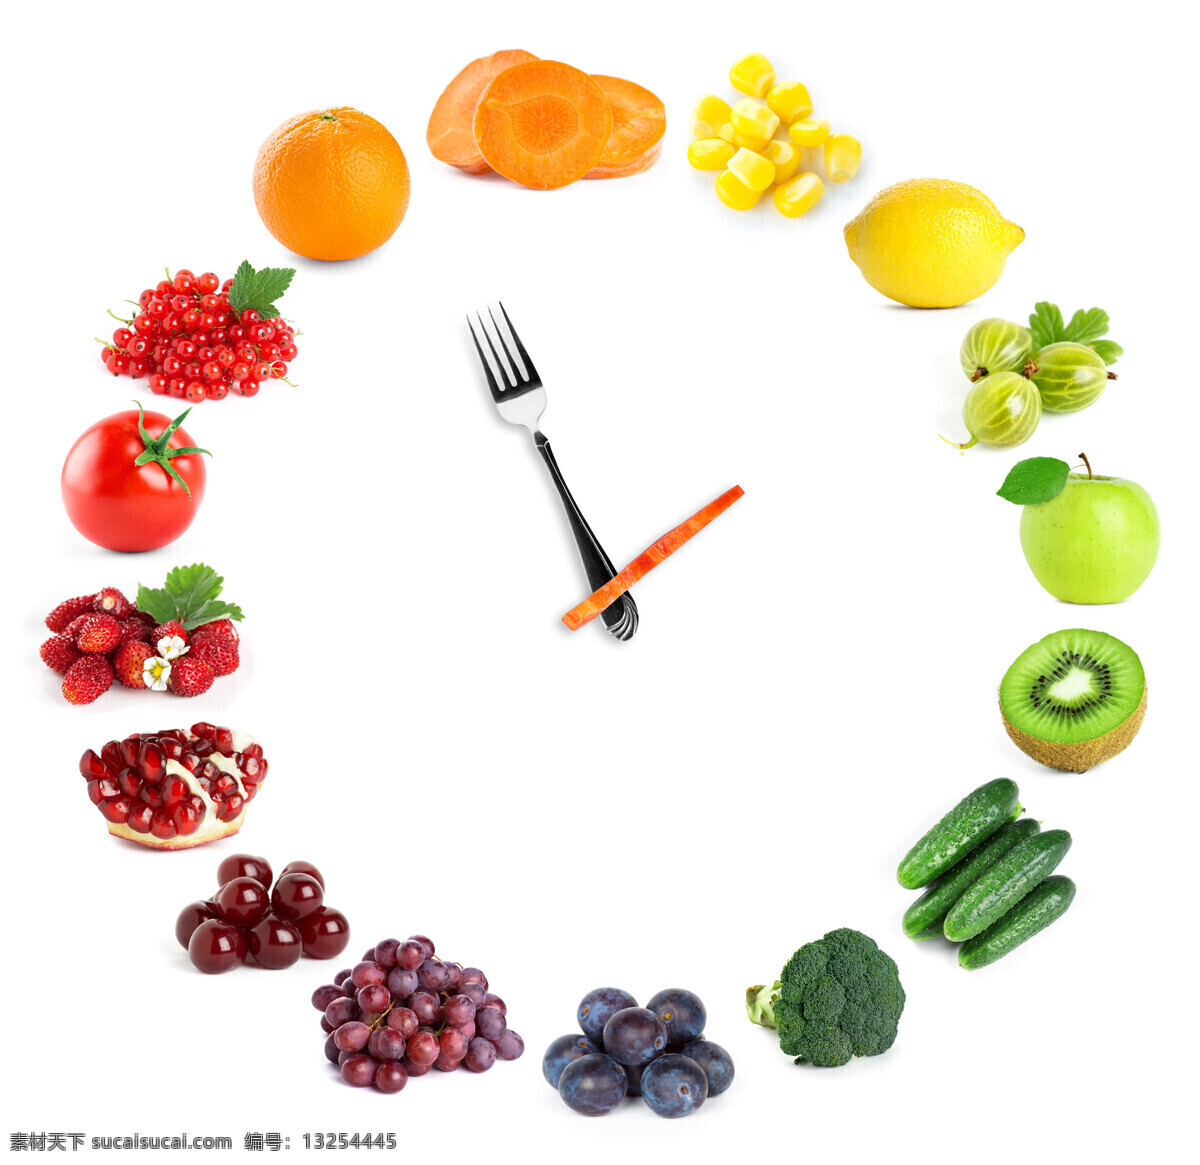 创意 时钟 水果 拼盘 多彩 美食 生鲜蔬菜 生活百科 餐饮美食